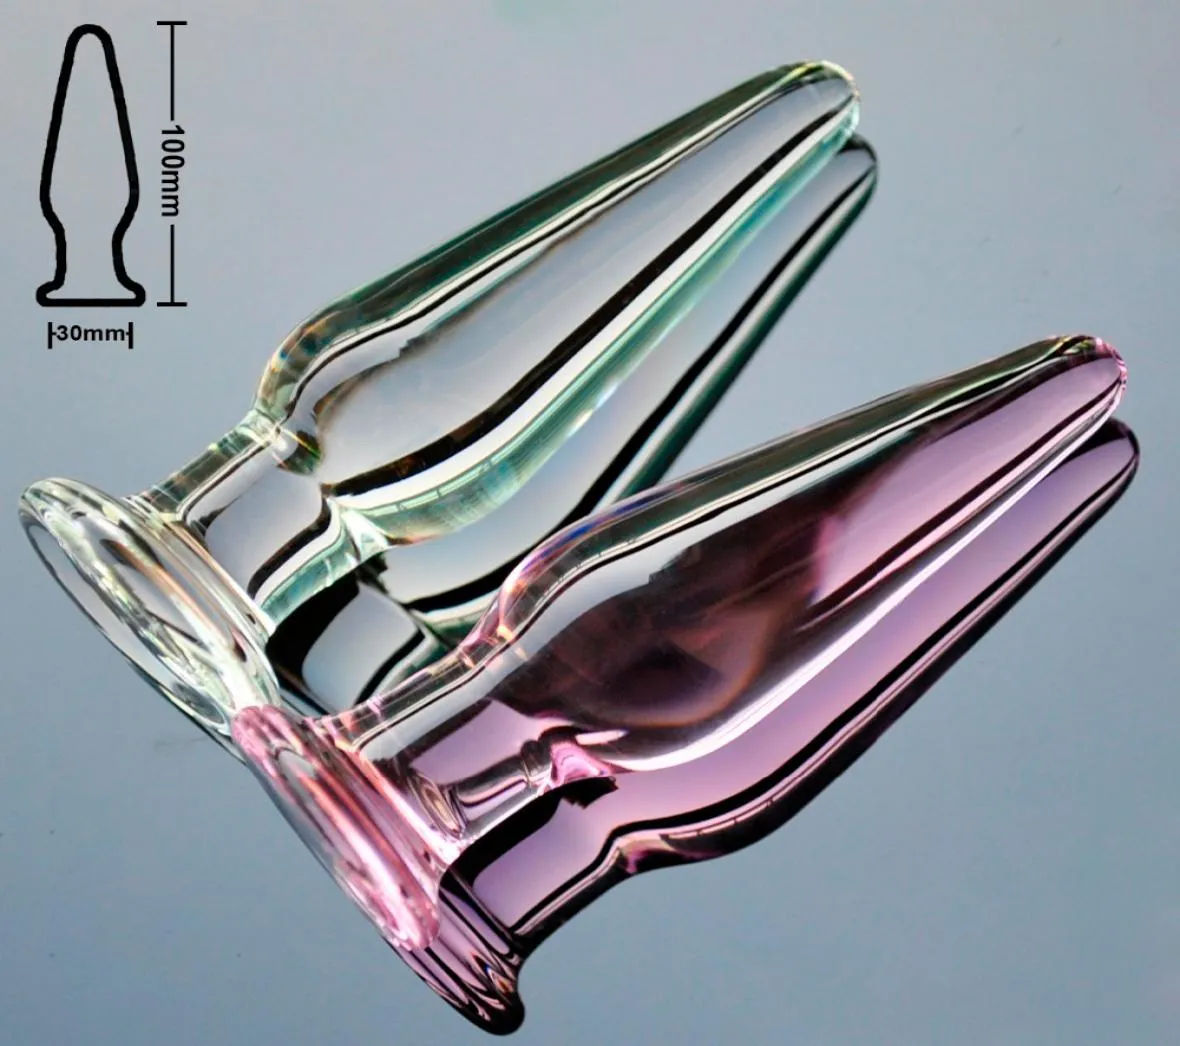 30mm cristal anal vibrador pirex contas de vidro butt plug falso masculino pênis pau feminino masturbação adulto ânus brinquedo sexual para mulheres homens gay s2755650